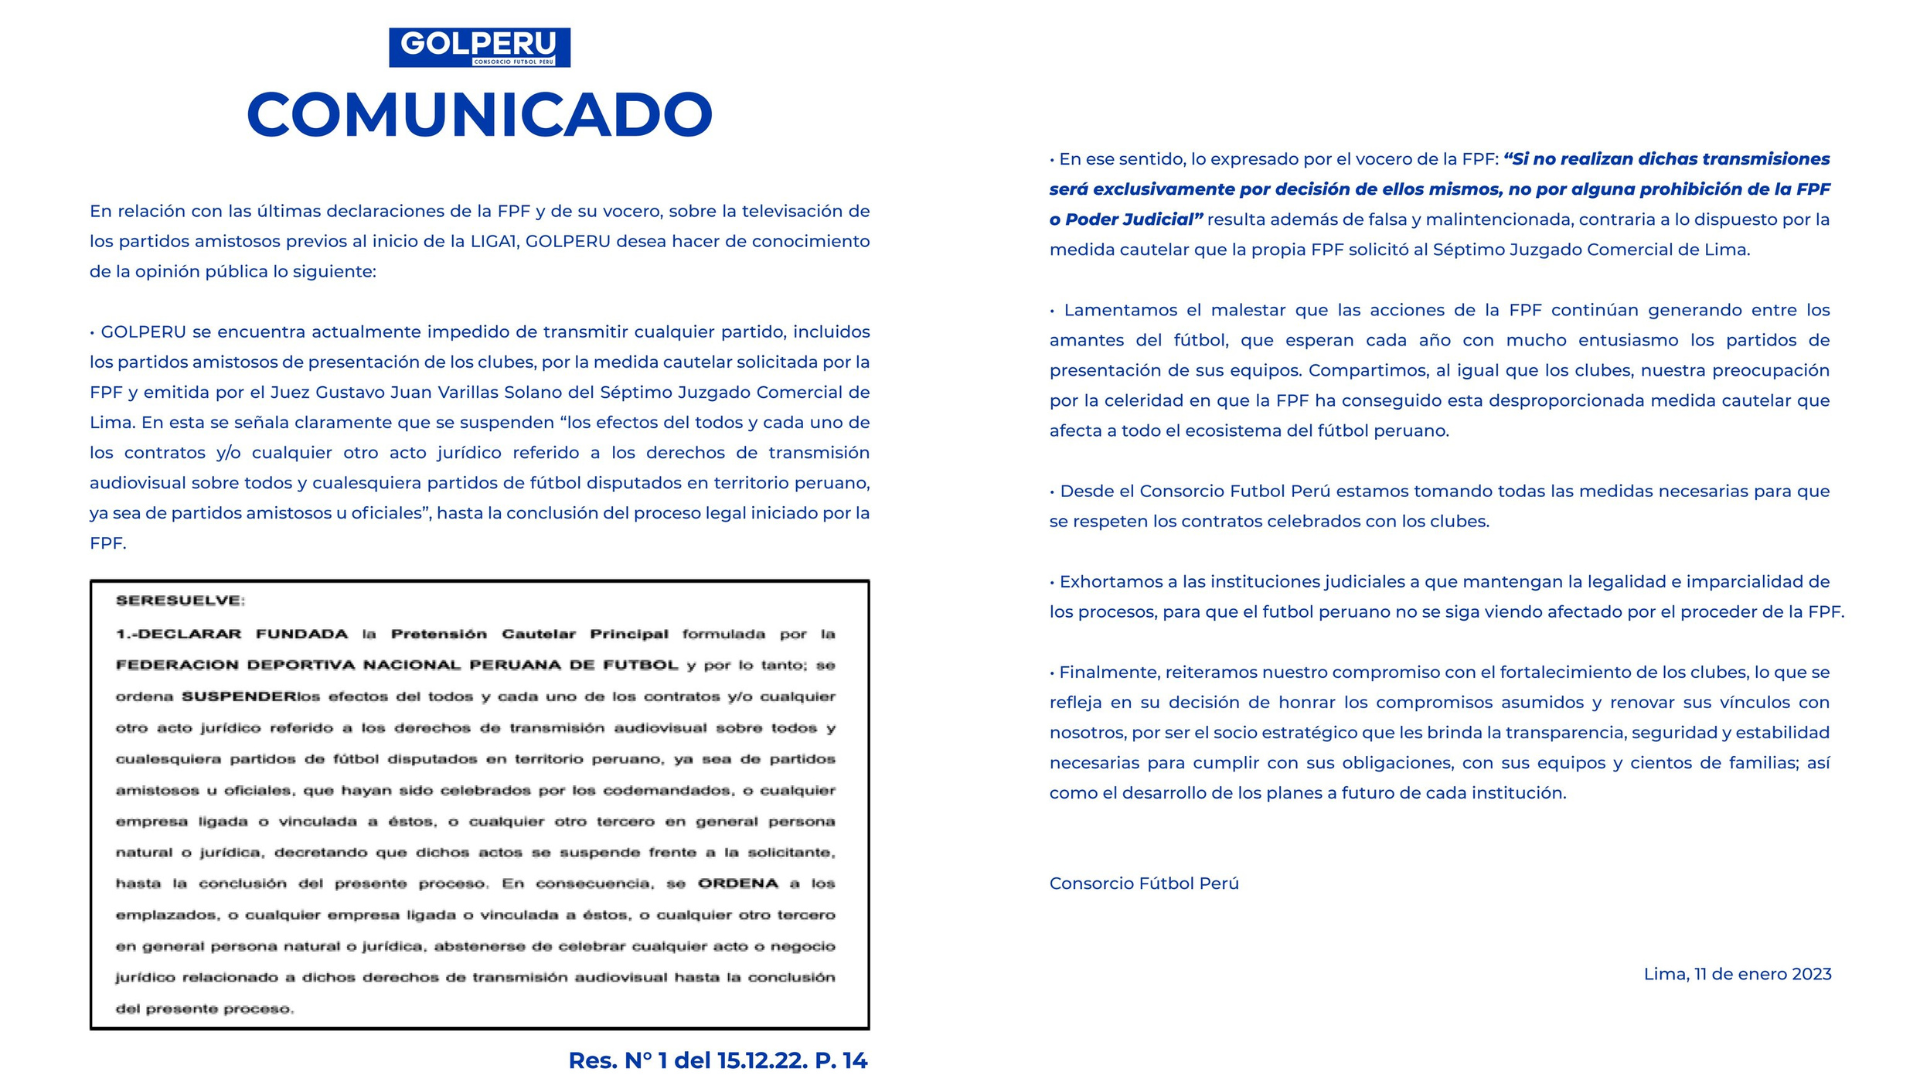 Comunicado de GOLPERU sobre medida cautelar que  suspende los derechos de transmisión del Consorcio Fútbol Perú. (GOLPERU)